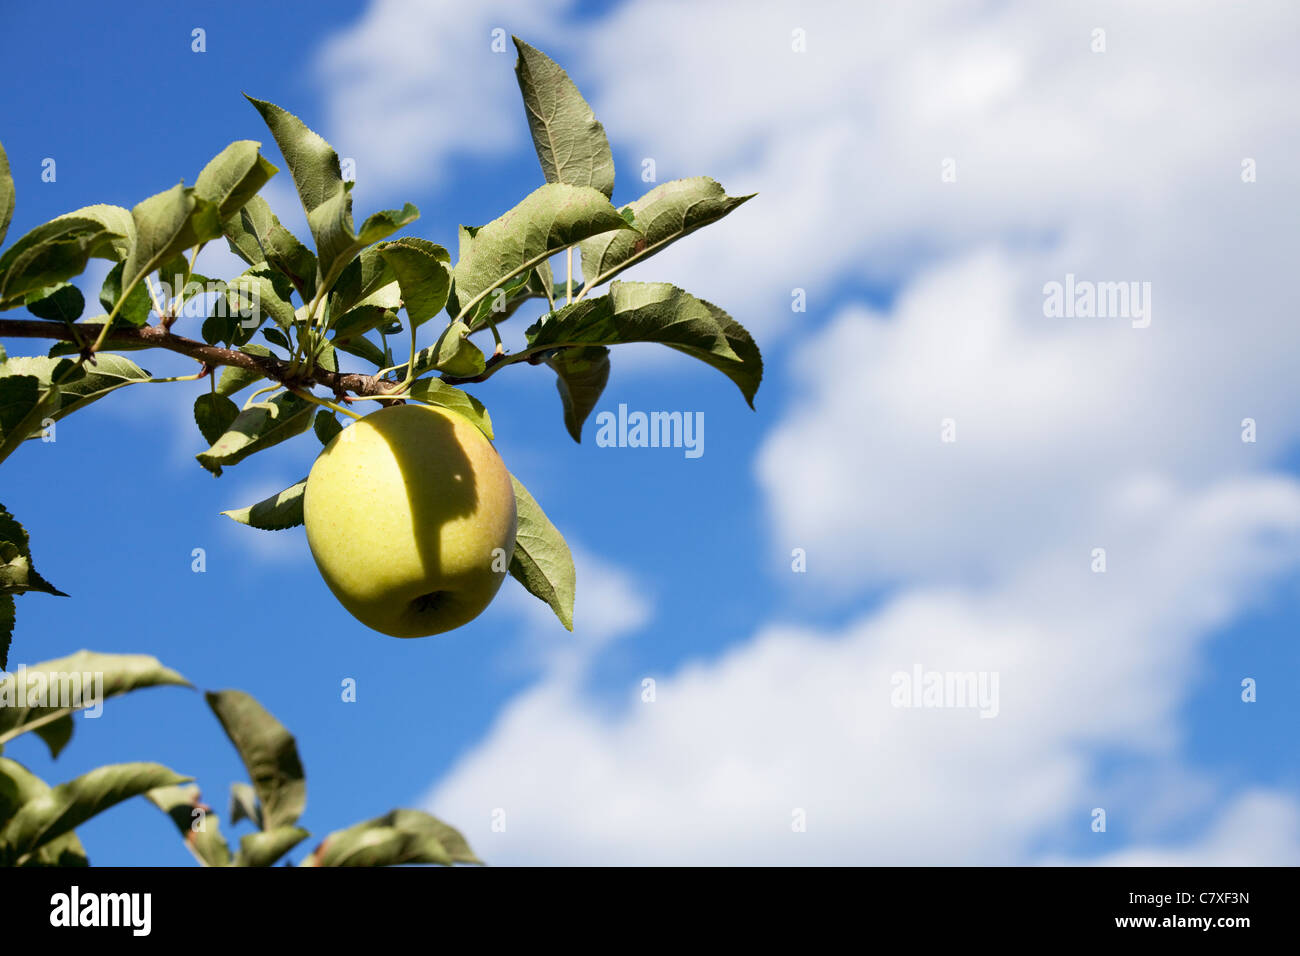 Pomme Golden delicious sur une branche contre un ciel bleu avec des nuages Banque D'Images